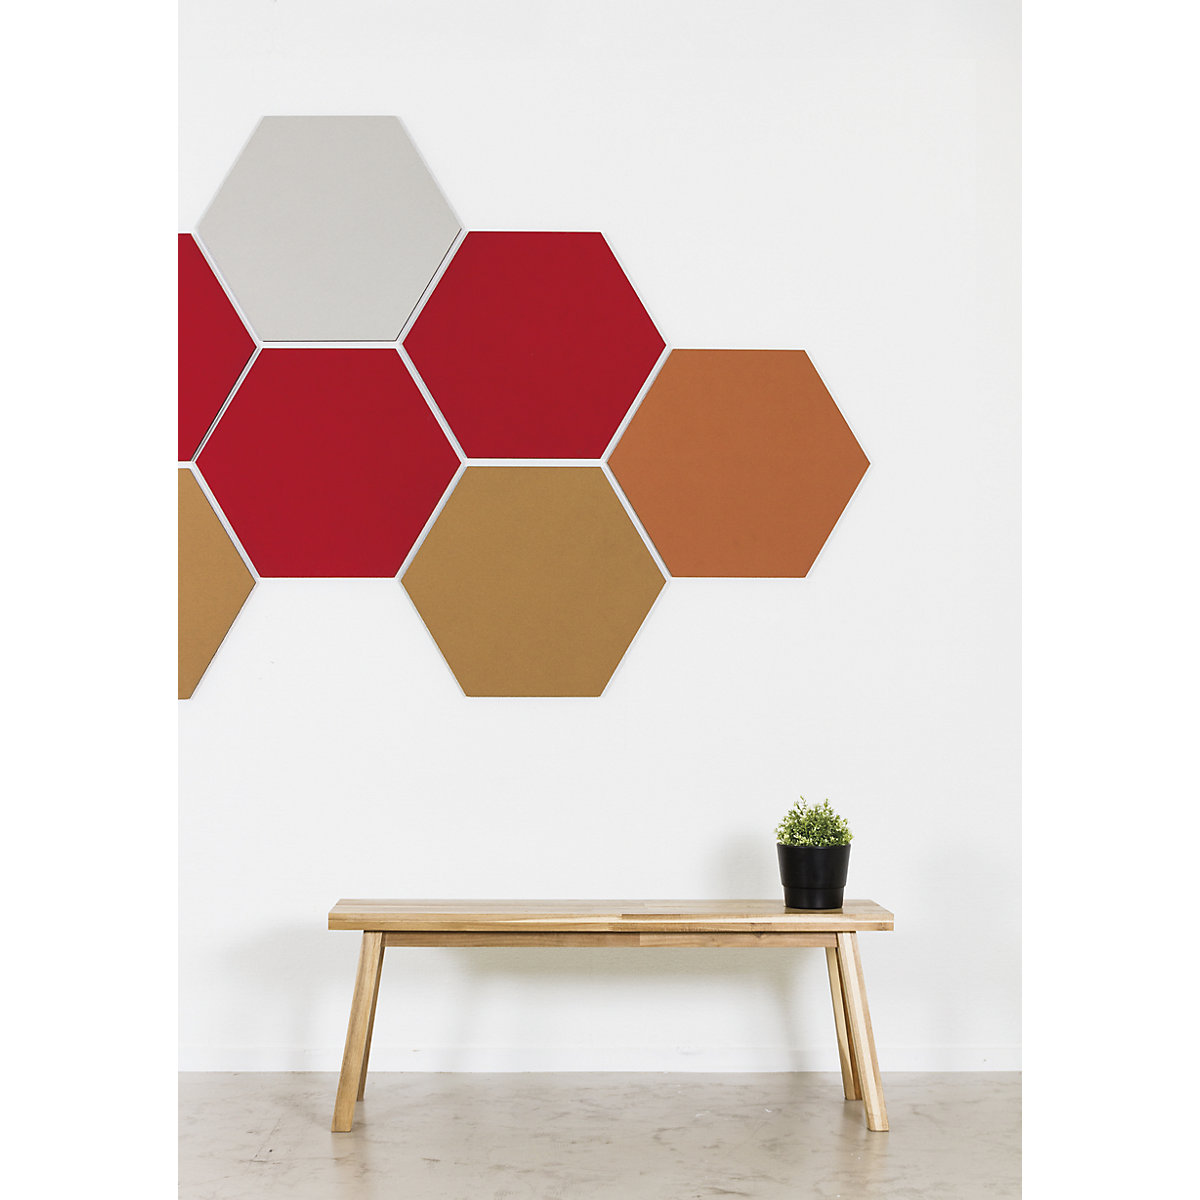 Quadro de pinos com design hexagonal – Chameleon (Imagem do produto 19)-18